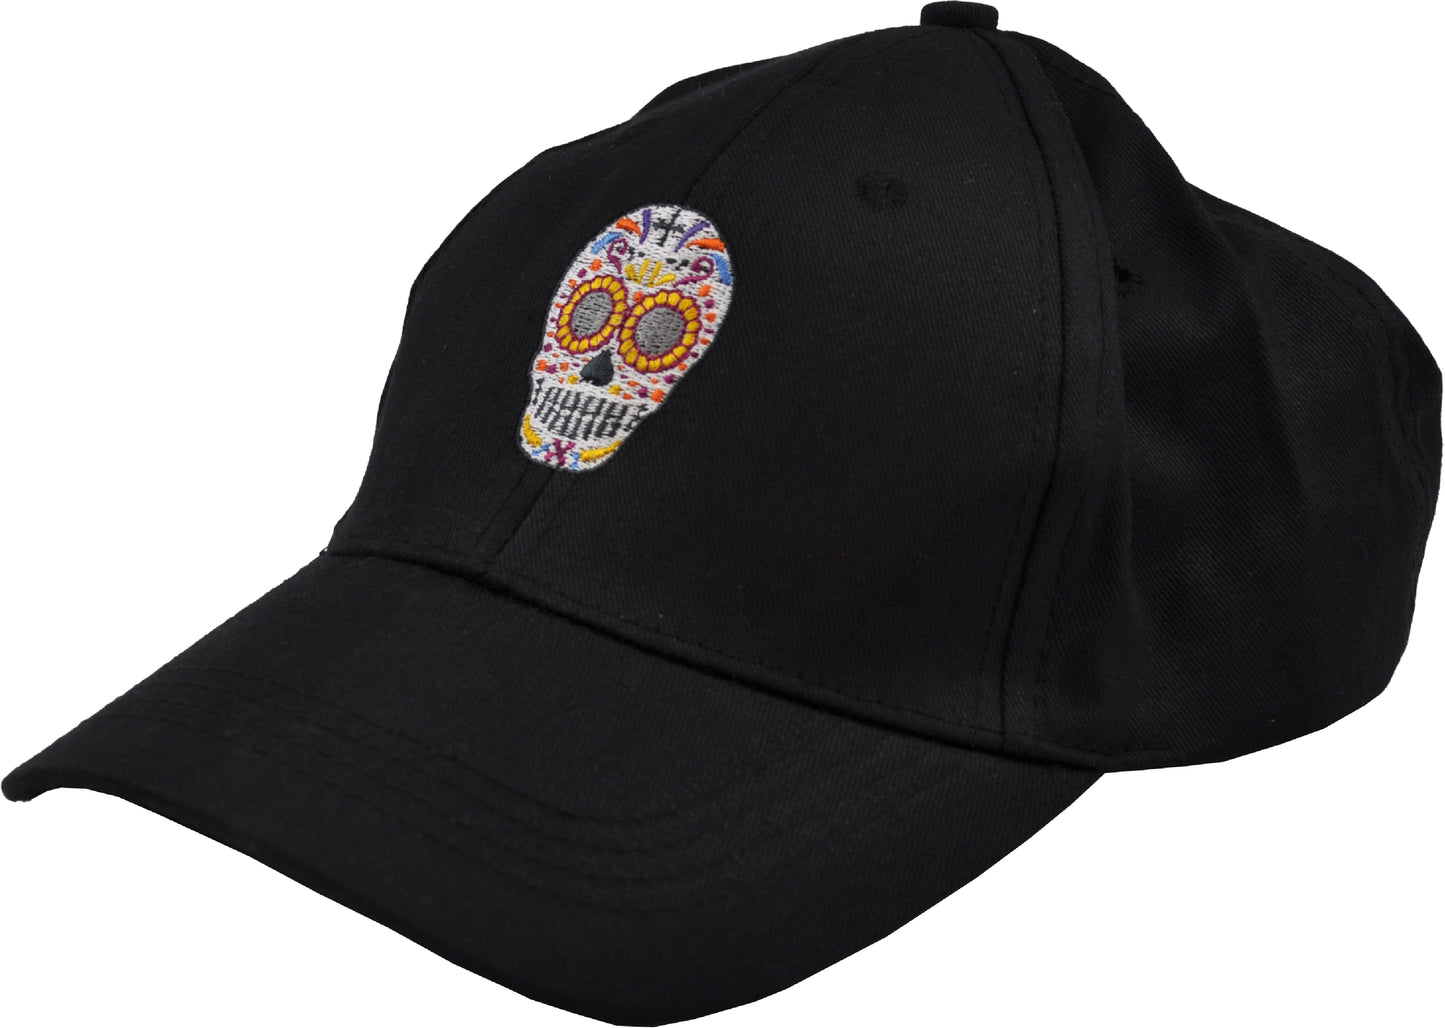 Embroidered Festive Skull Cap